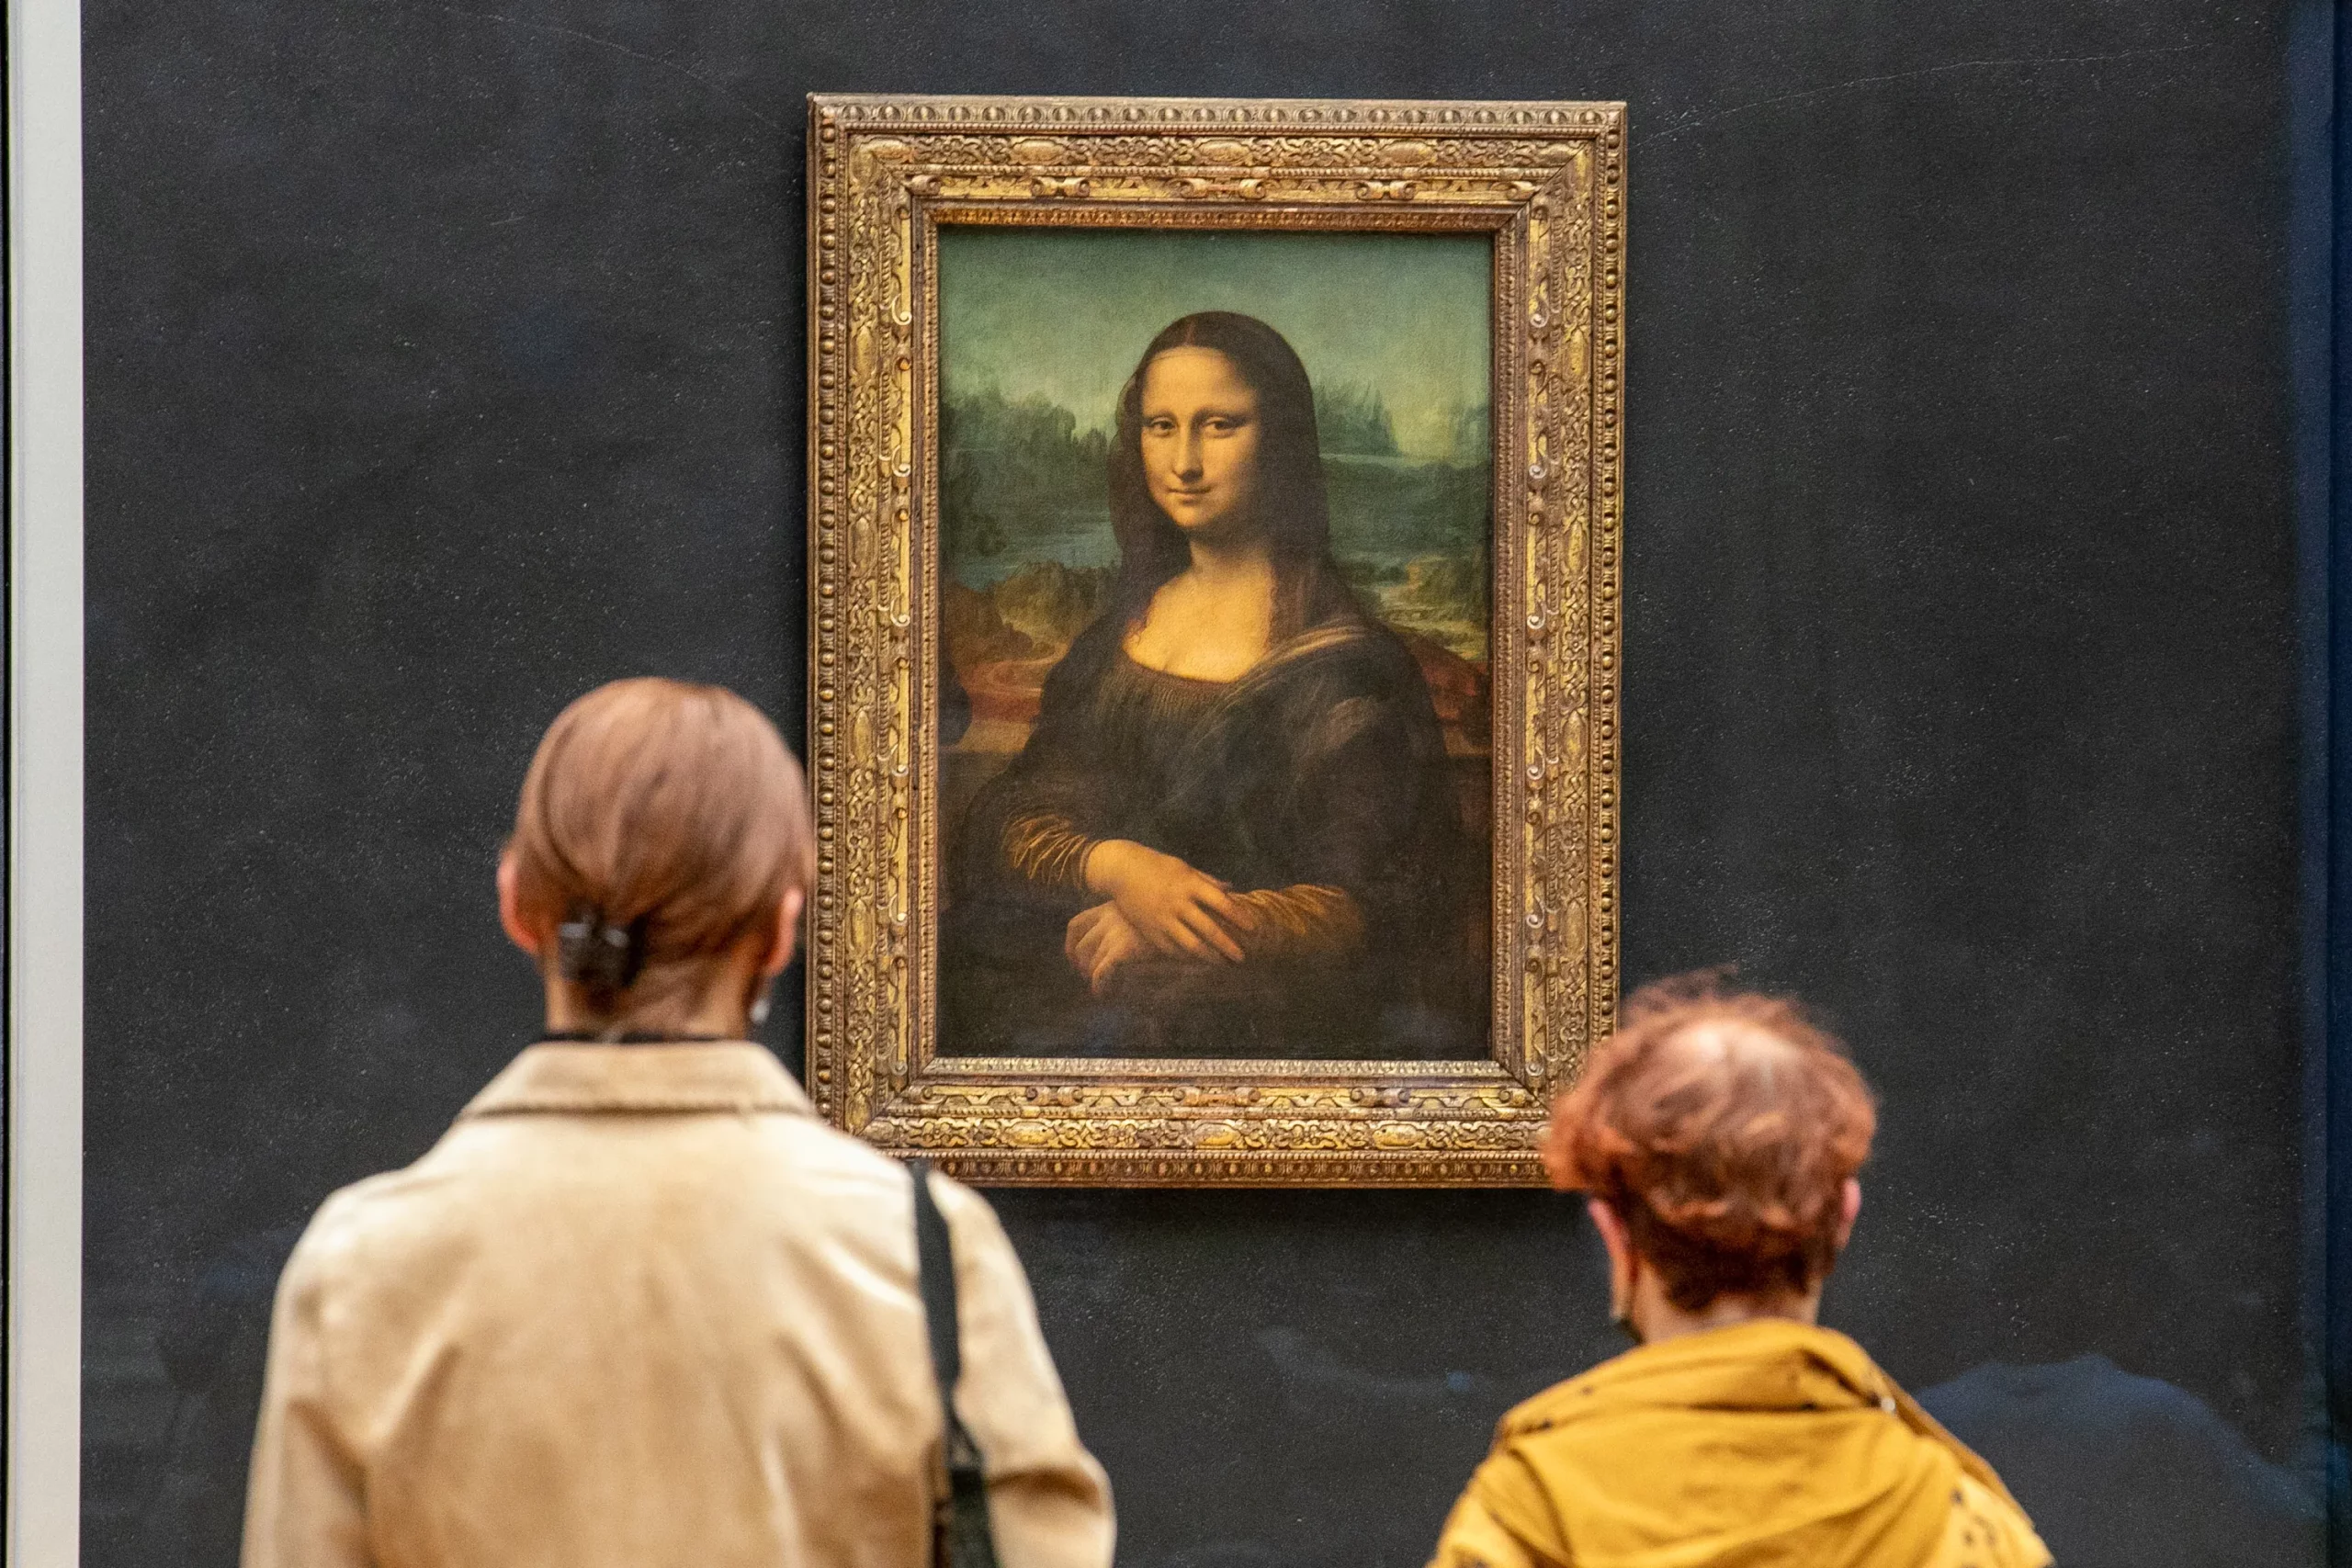 Le Louvre de Paris : Joyau Mondial des Arts - La Maison de la Célèbre Joconde de Léonard de Vinci